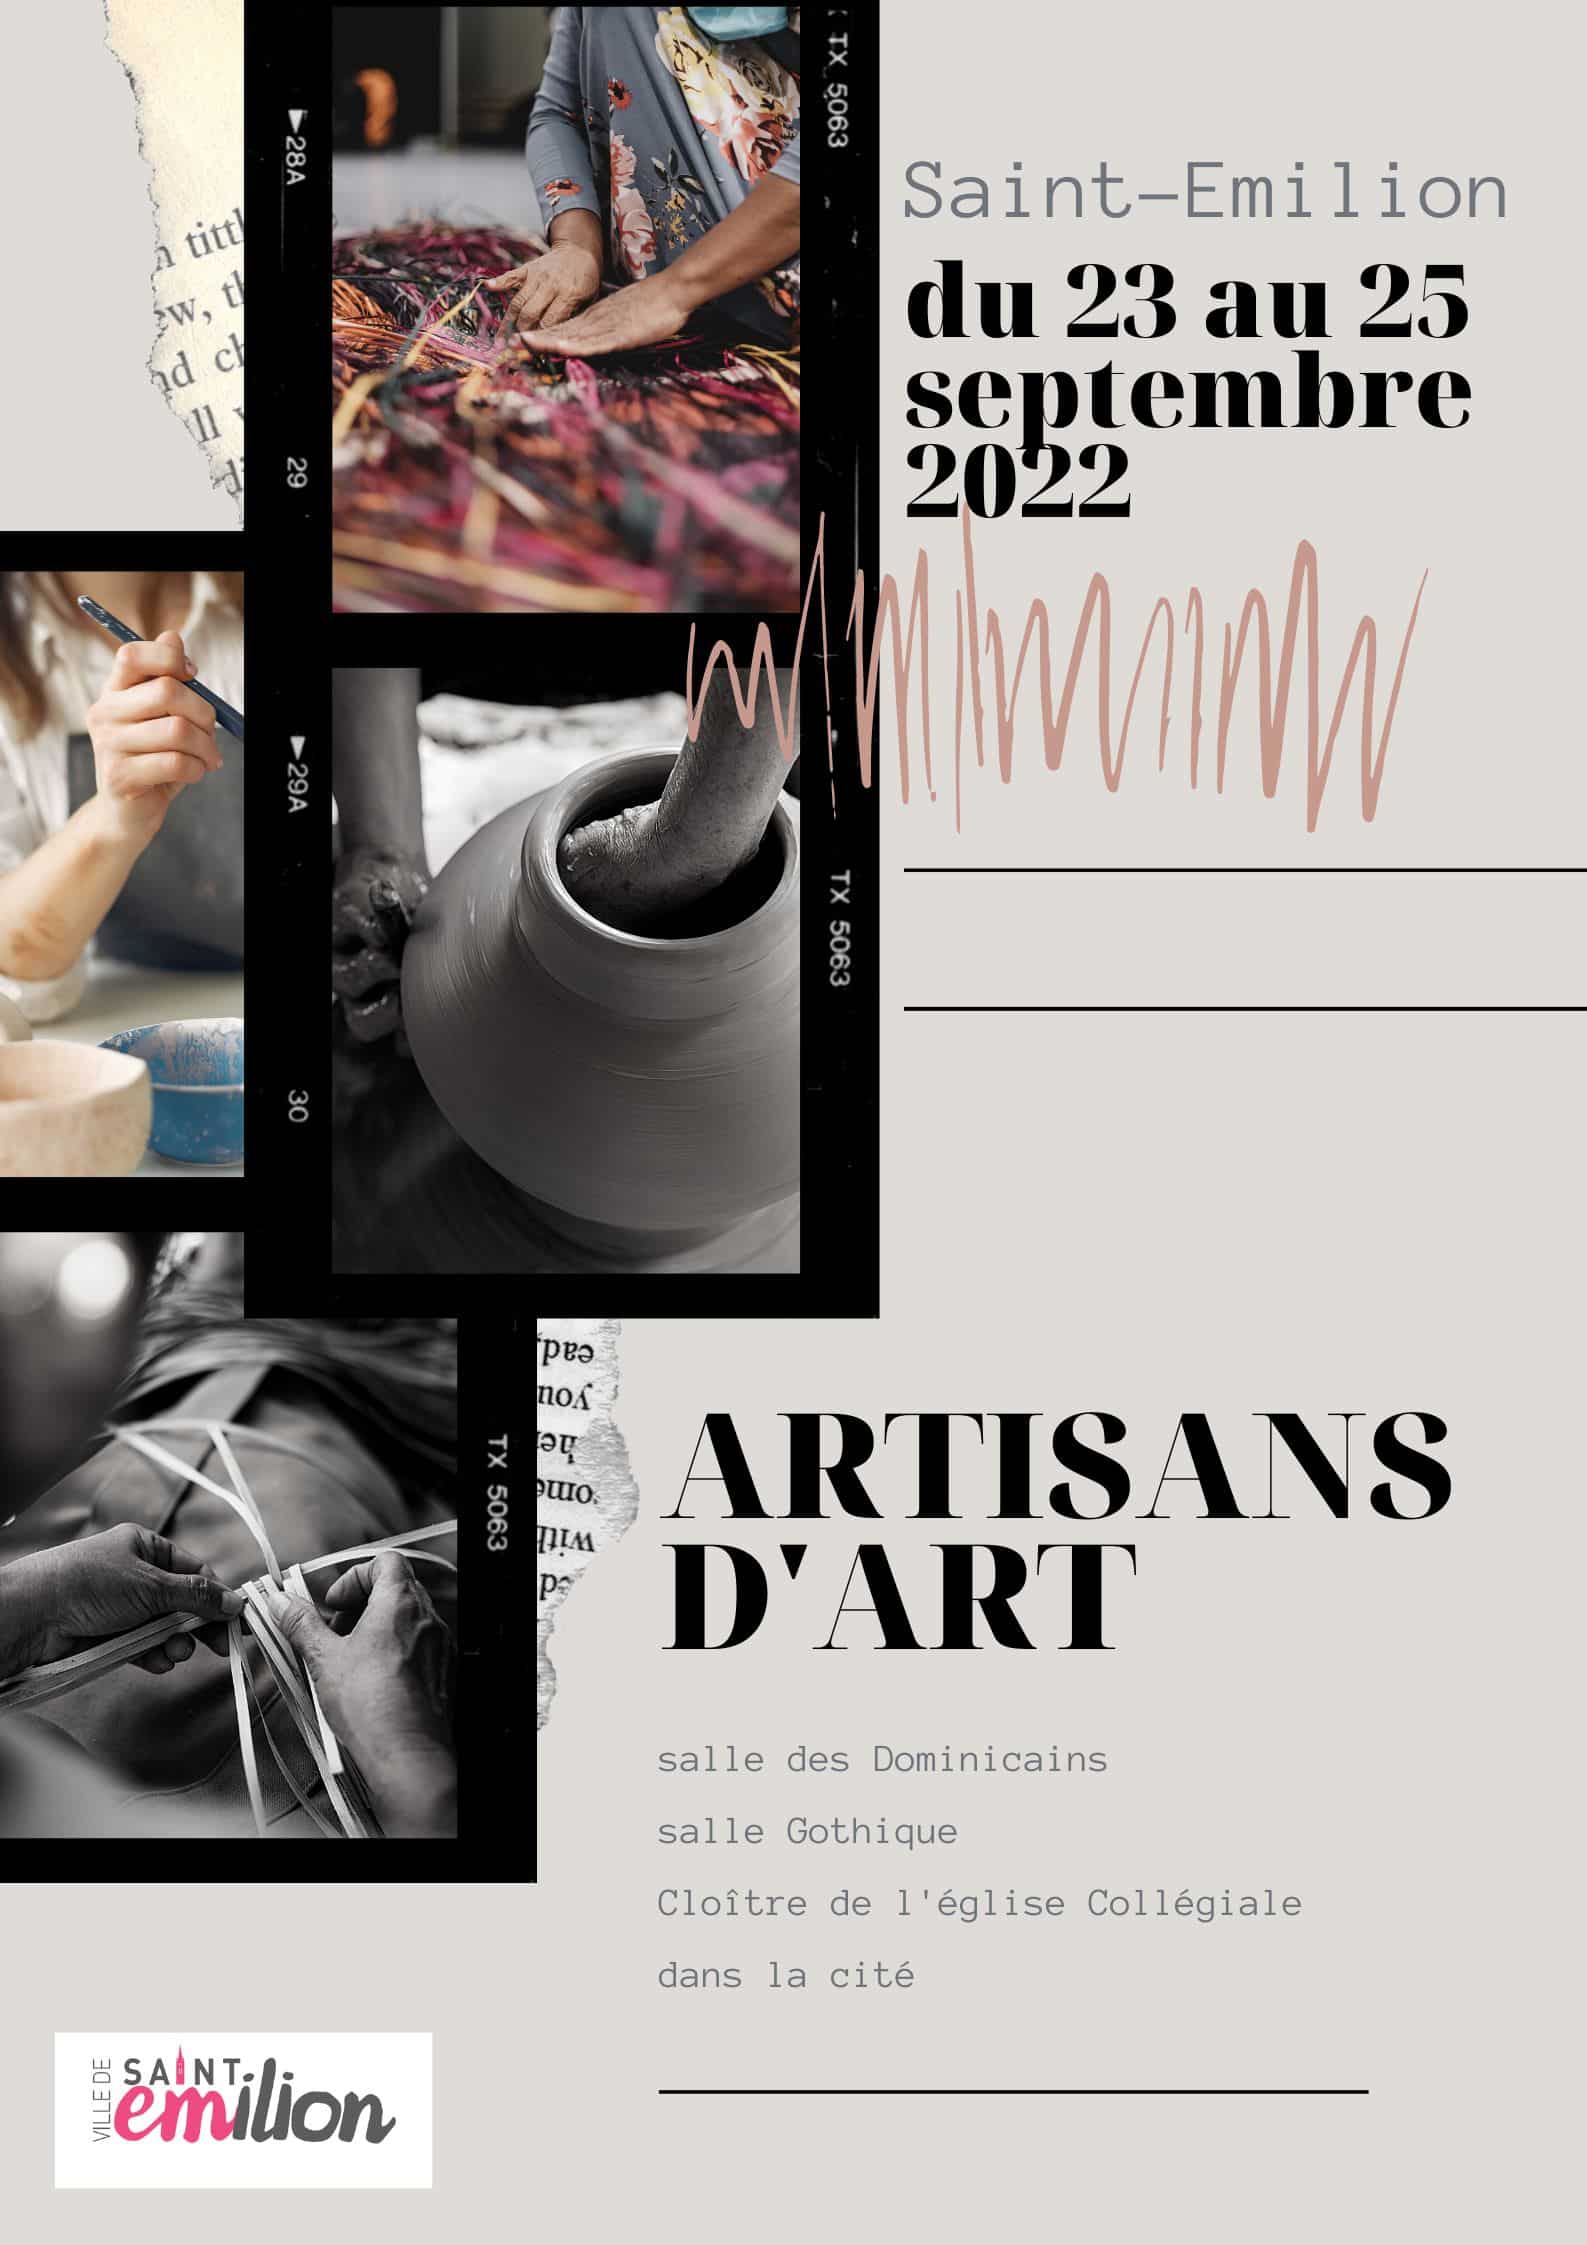 Salon des Artisans d'Art de Saint Elilion (33330) dans plusieurs lieux de la ville les 23,24 et 23 septembre 2022